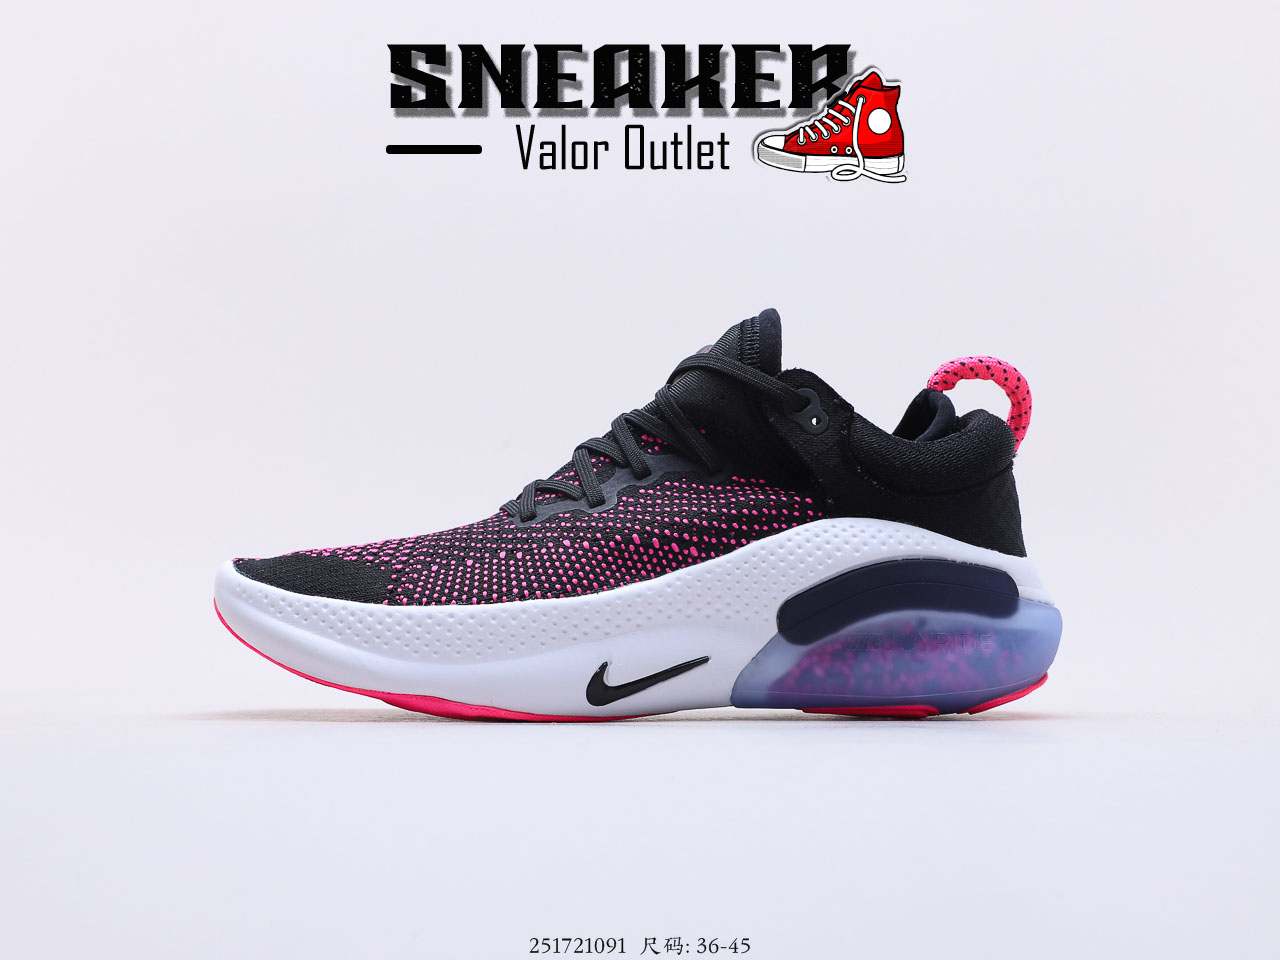 【Sneaker Valor】รองเท้าNike Joyride Run Flyknit - Black purple รองเท้าวิ่ง รองเท้าผ้าใบแฟชั่น รองเท้าลำลอง ถ่ายจากรีวิวสินค้าจริง100%